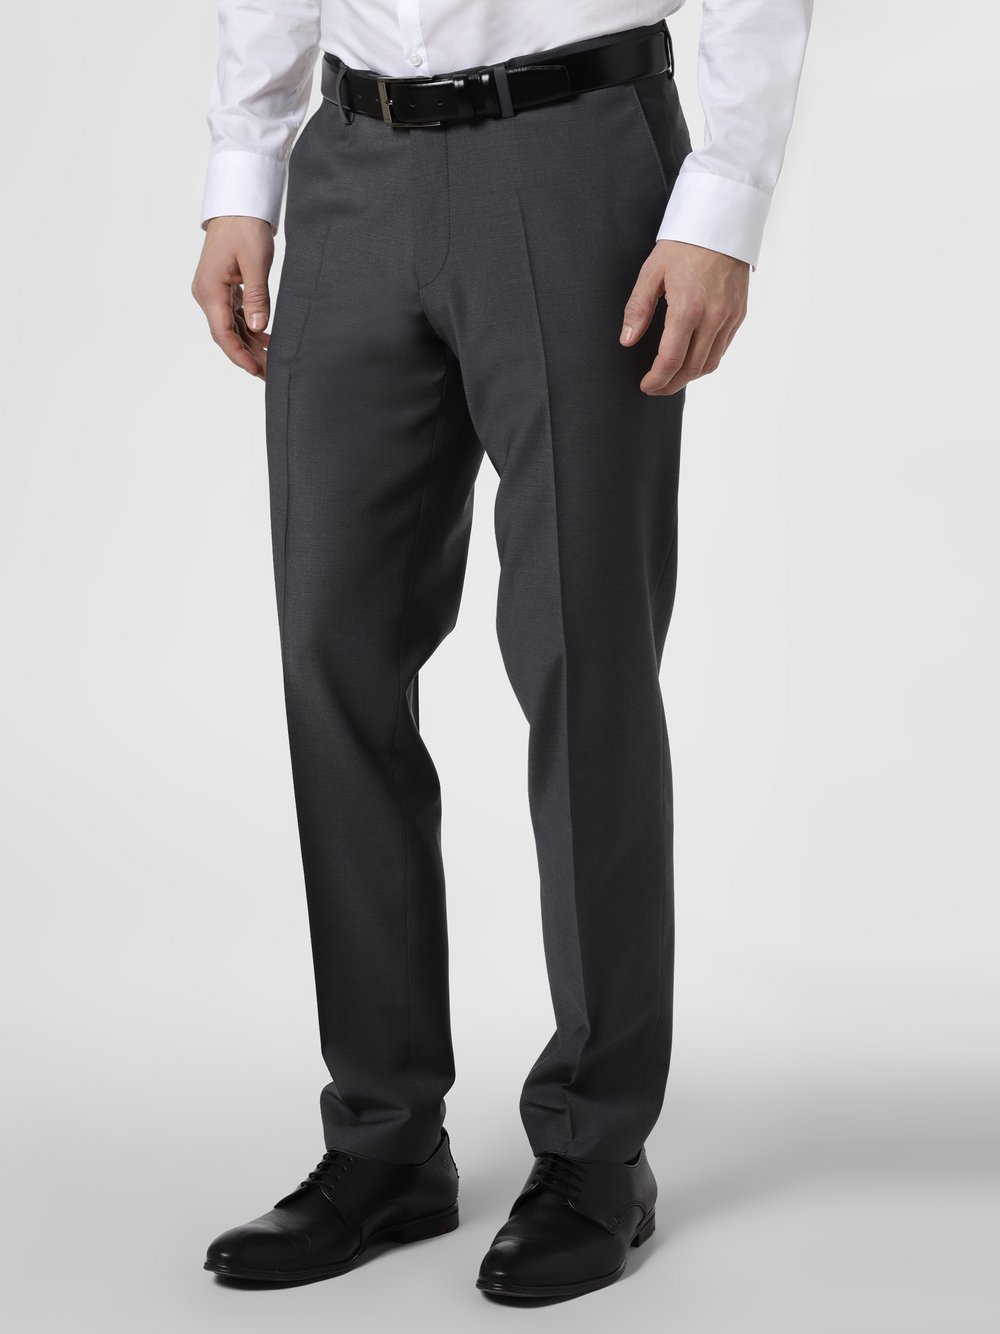 Finshley & Harding London - Męskie spodnie od garnituru modułowego – Grant Athletic, szary